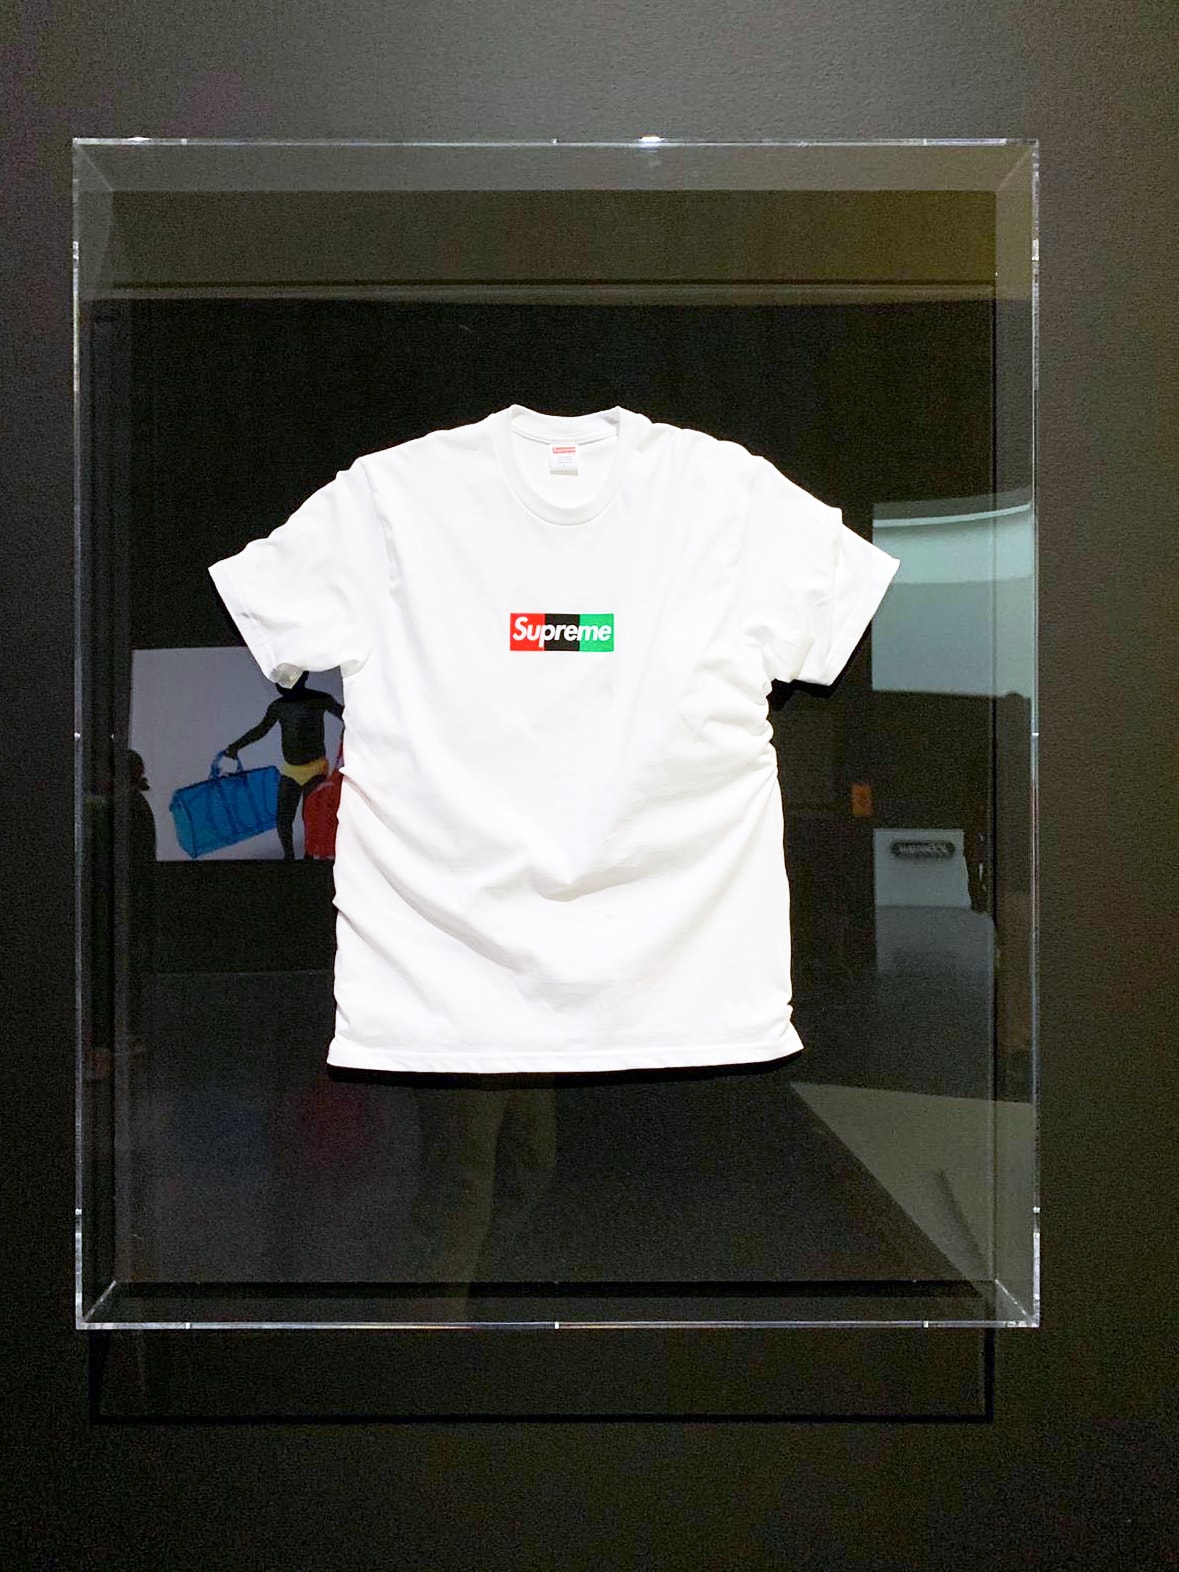 버질 아블로의 슈프림 박스 로고 티셔츠, 전시 '피겨스 오브 스피치'를 통해 공개 